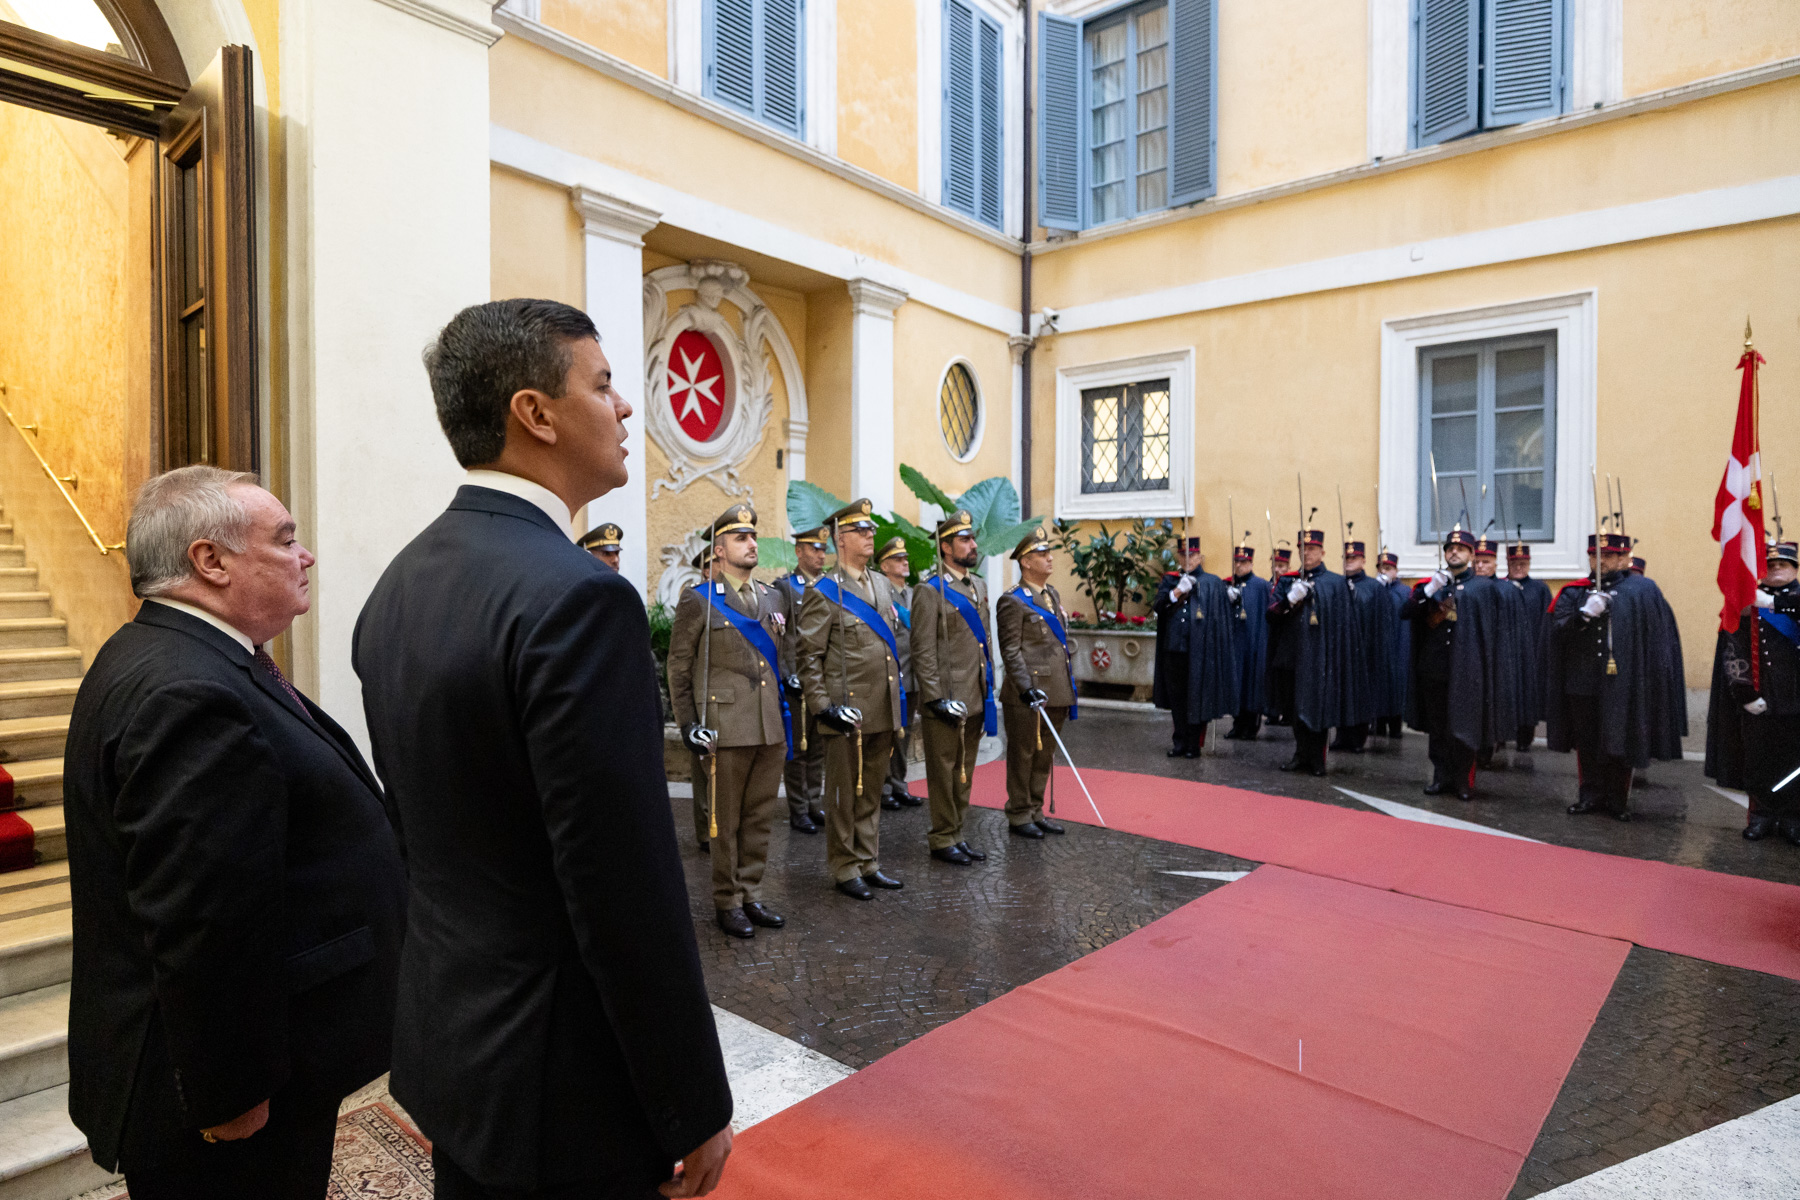 Der Großmeister des Souveränen Malteserordens empfängt den Präsidenten von Paraguay zu einem offiziellen Besuch